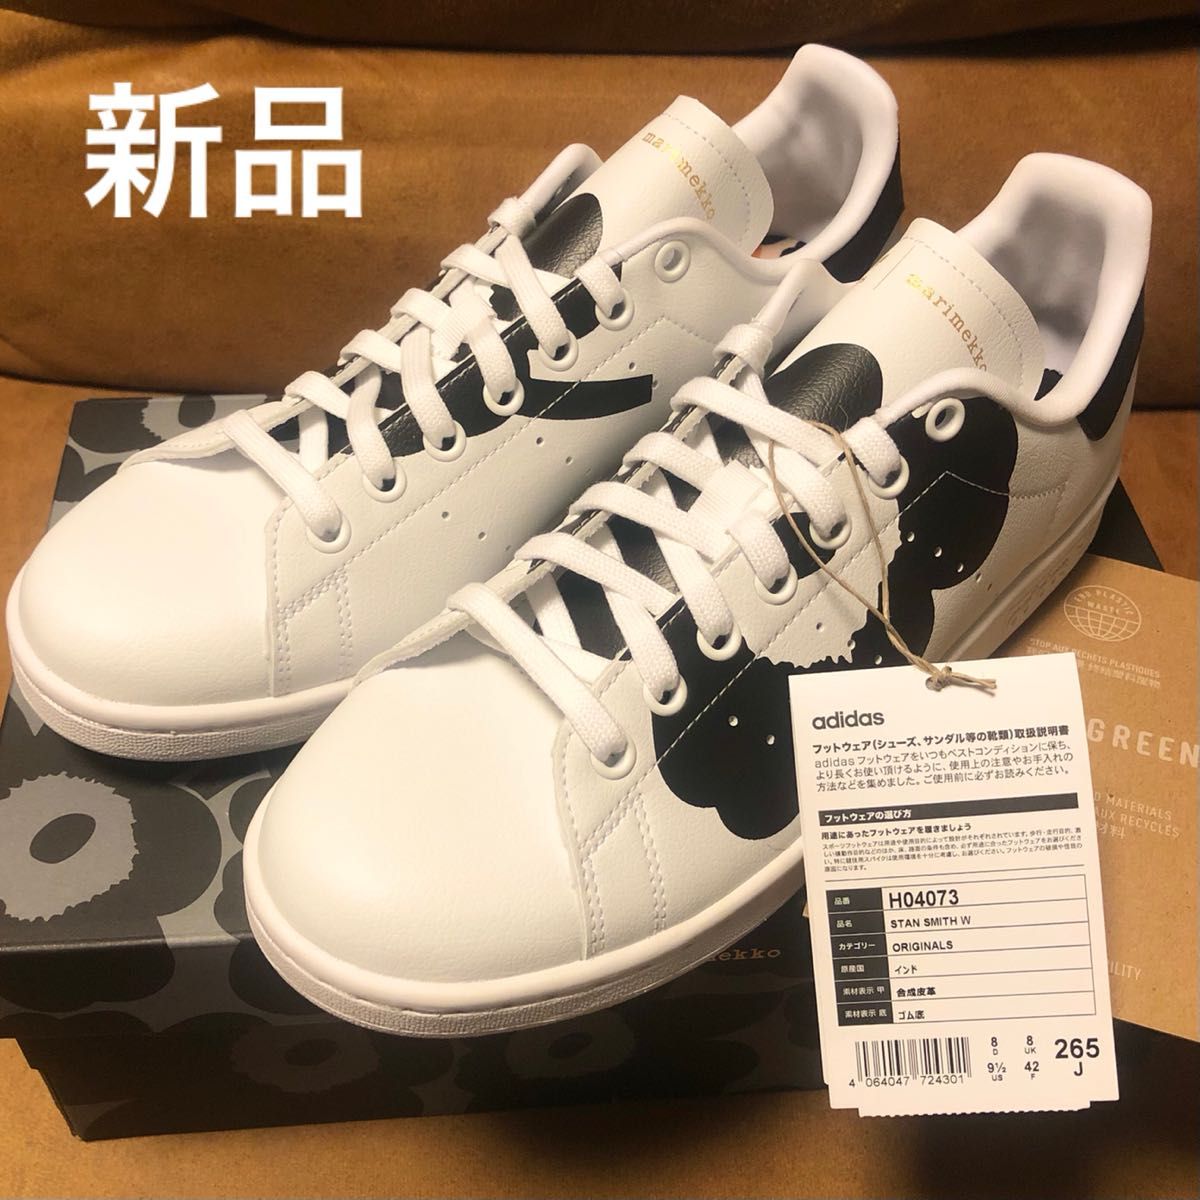 【新品】adidas Originals STAN SMITH W マリメッコ Marimekko 26.5cm 即納